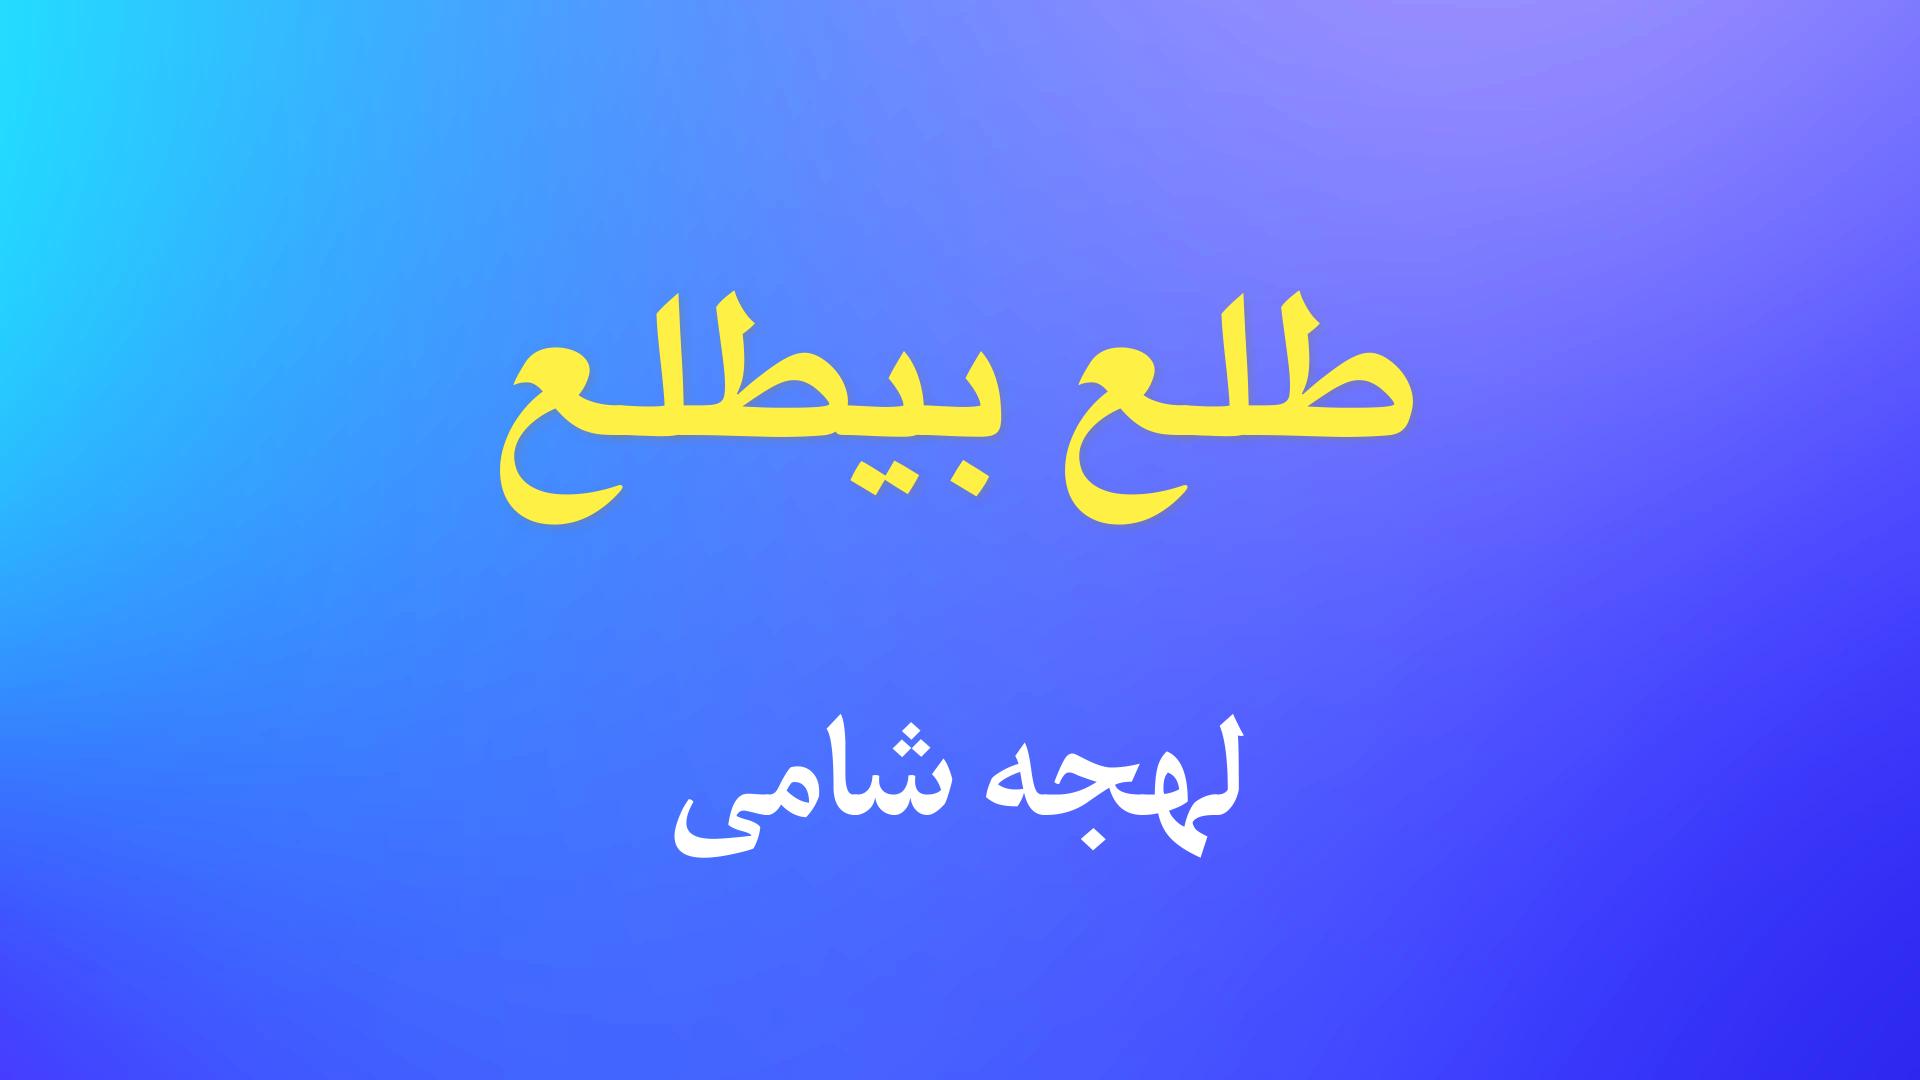 معنی فعل «طلع بیطلع» در لهجه شامی (سوری و لبنانی)+ویدئو